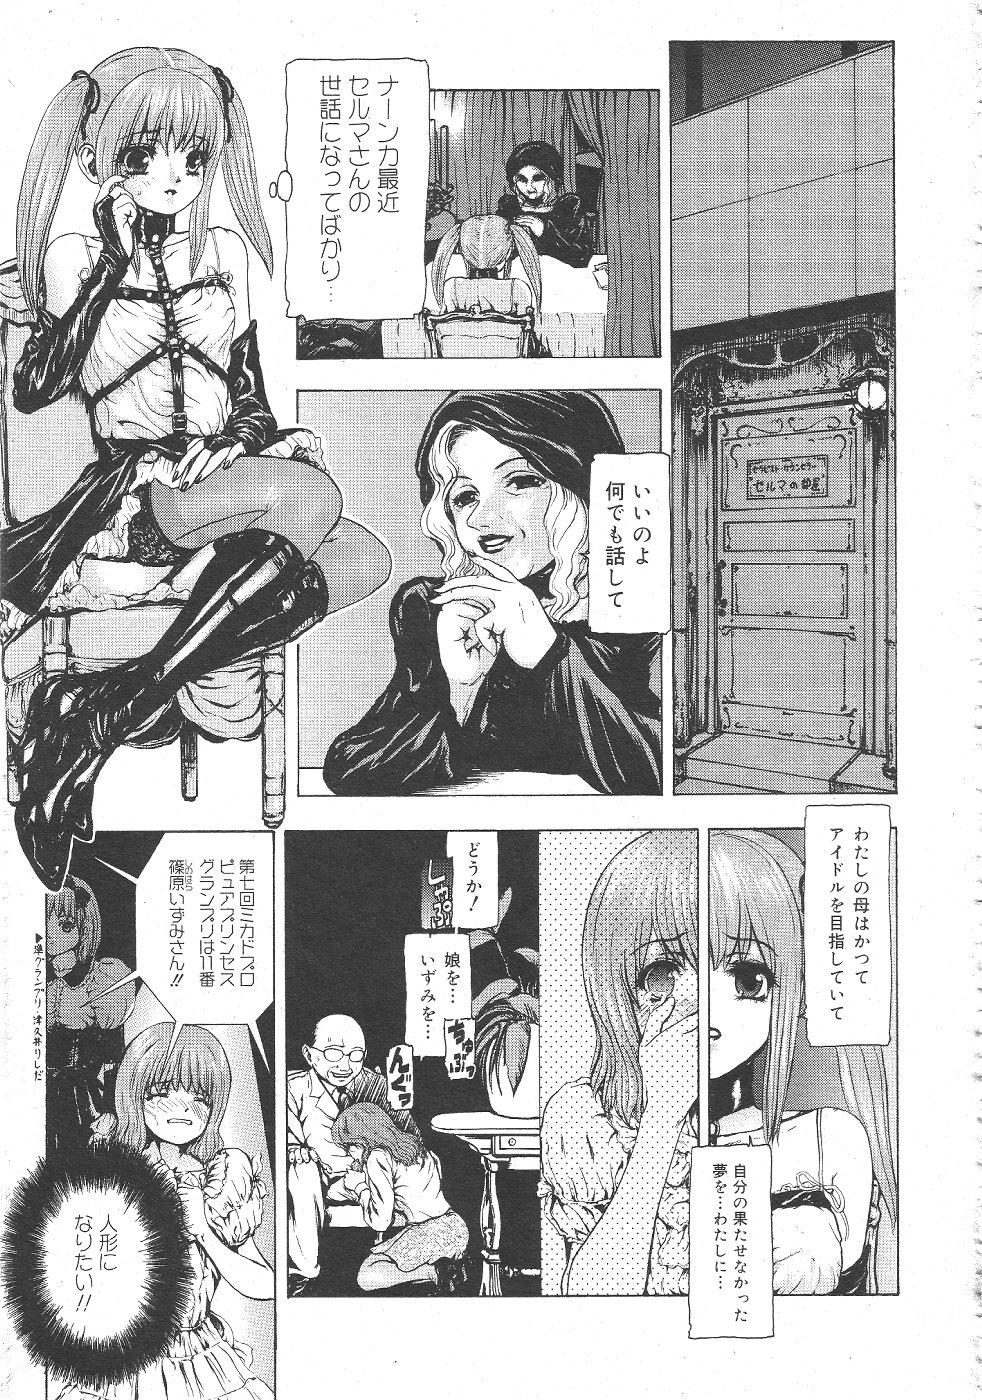 Gekkan Comic Muga 2004-06 Vol.10 152